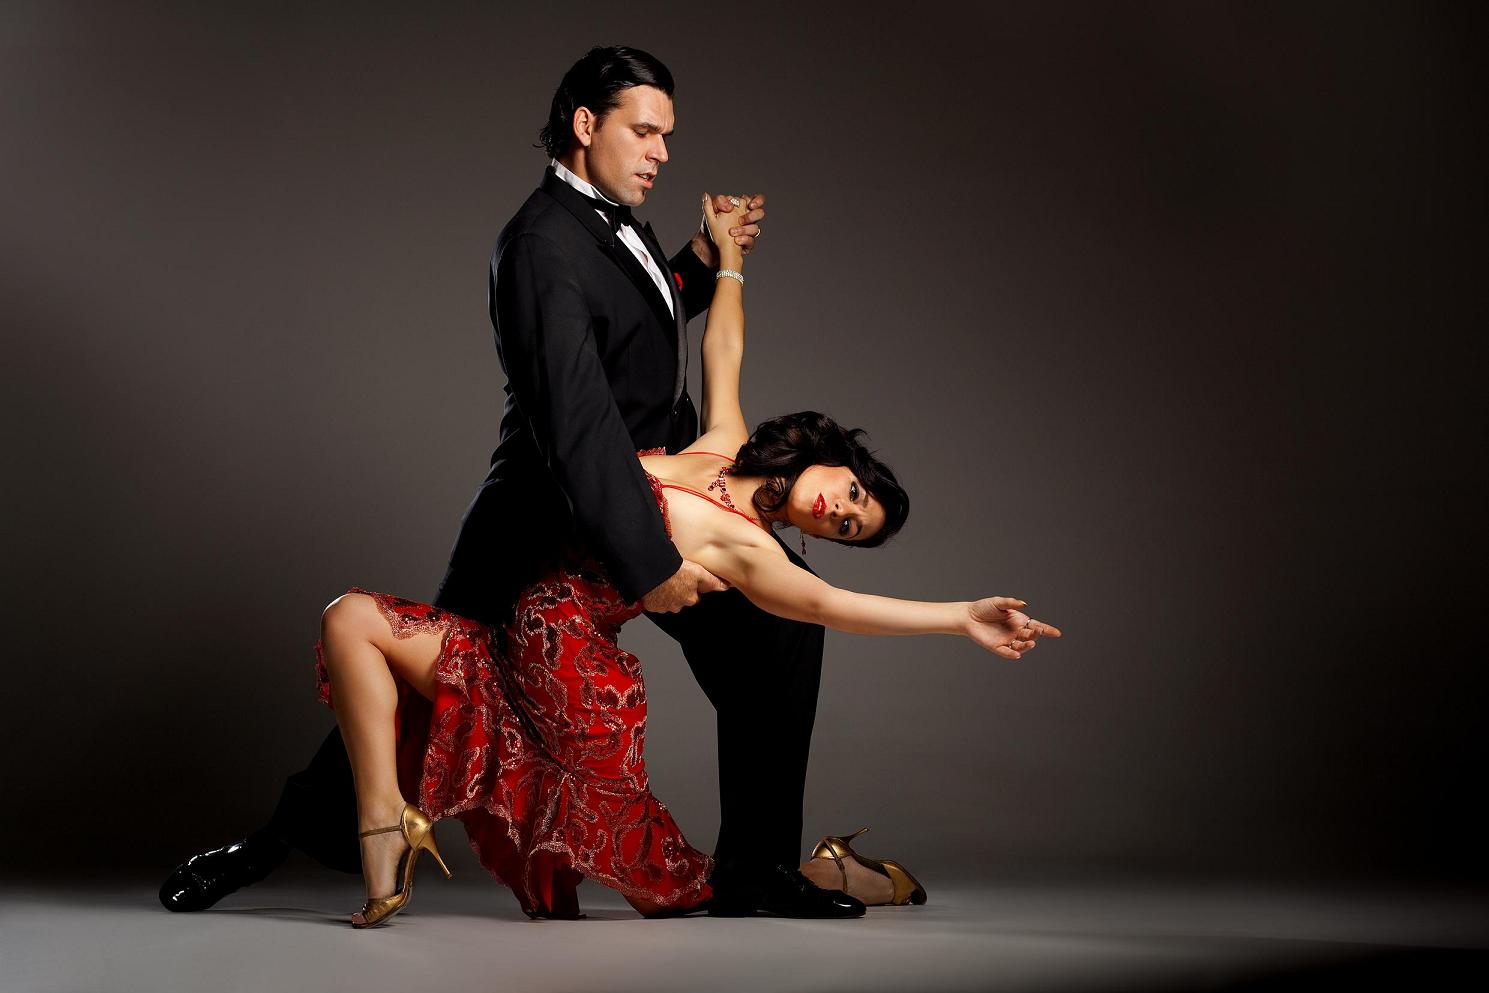 La columna de Leuco: "El tango de Manzi a de Caro" - Nexo Diario